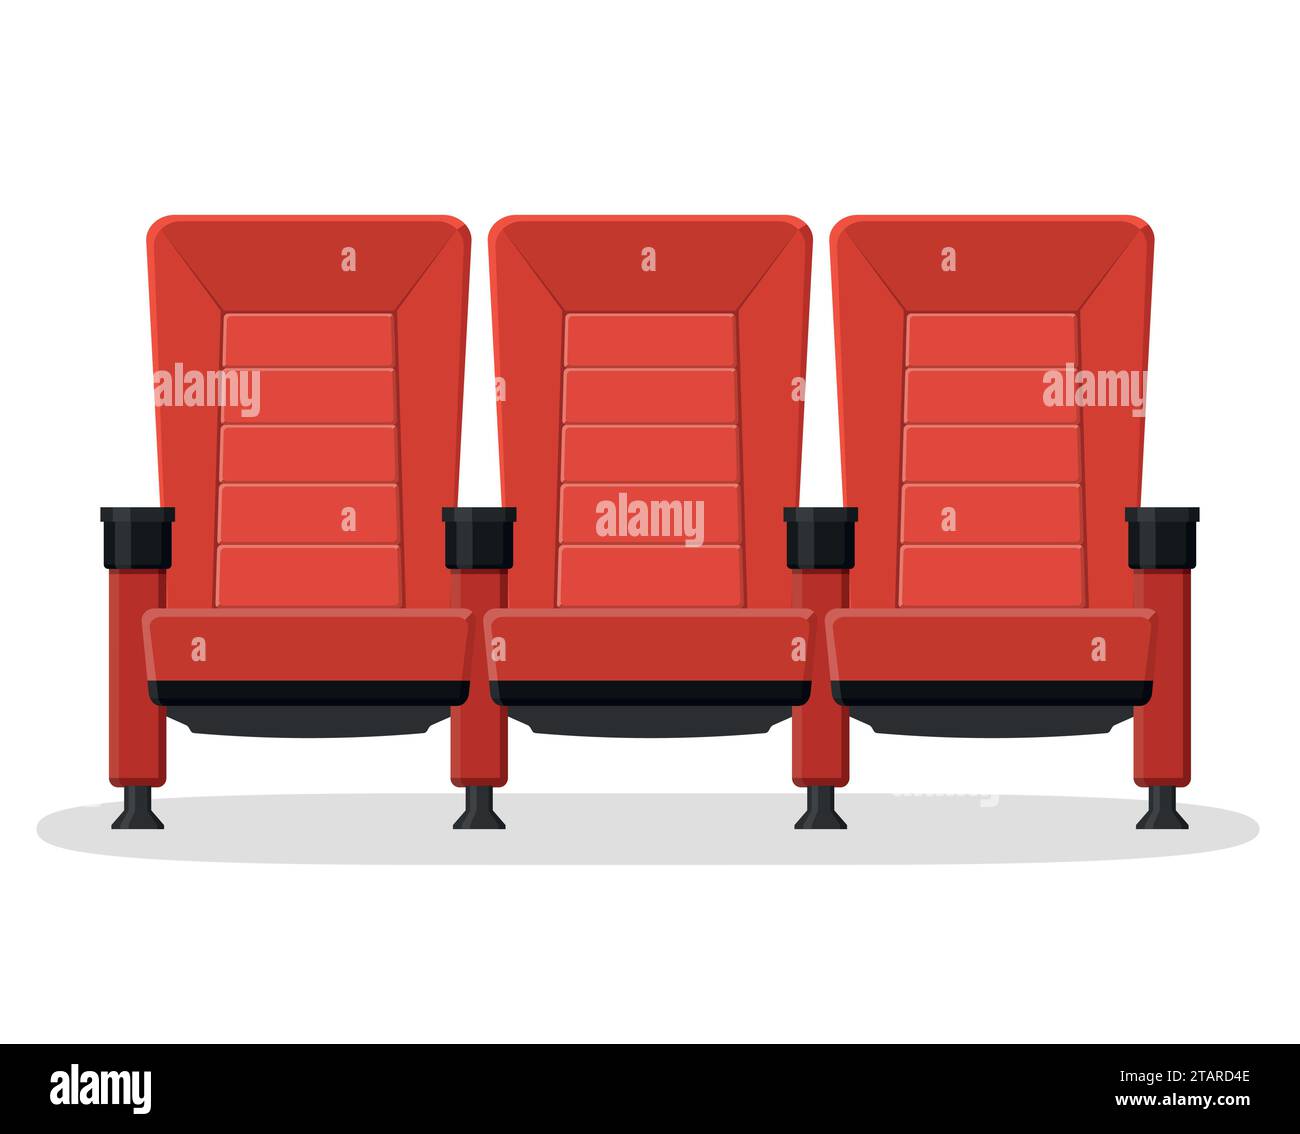 Siège confortable rouge cinéma pour regarder des films isolé sur fond blanc. Fauteuils confortables rouges film et illustration vectorielle de film Illustration de Vecteur